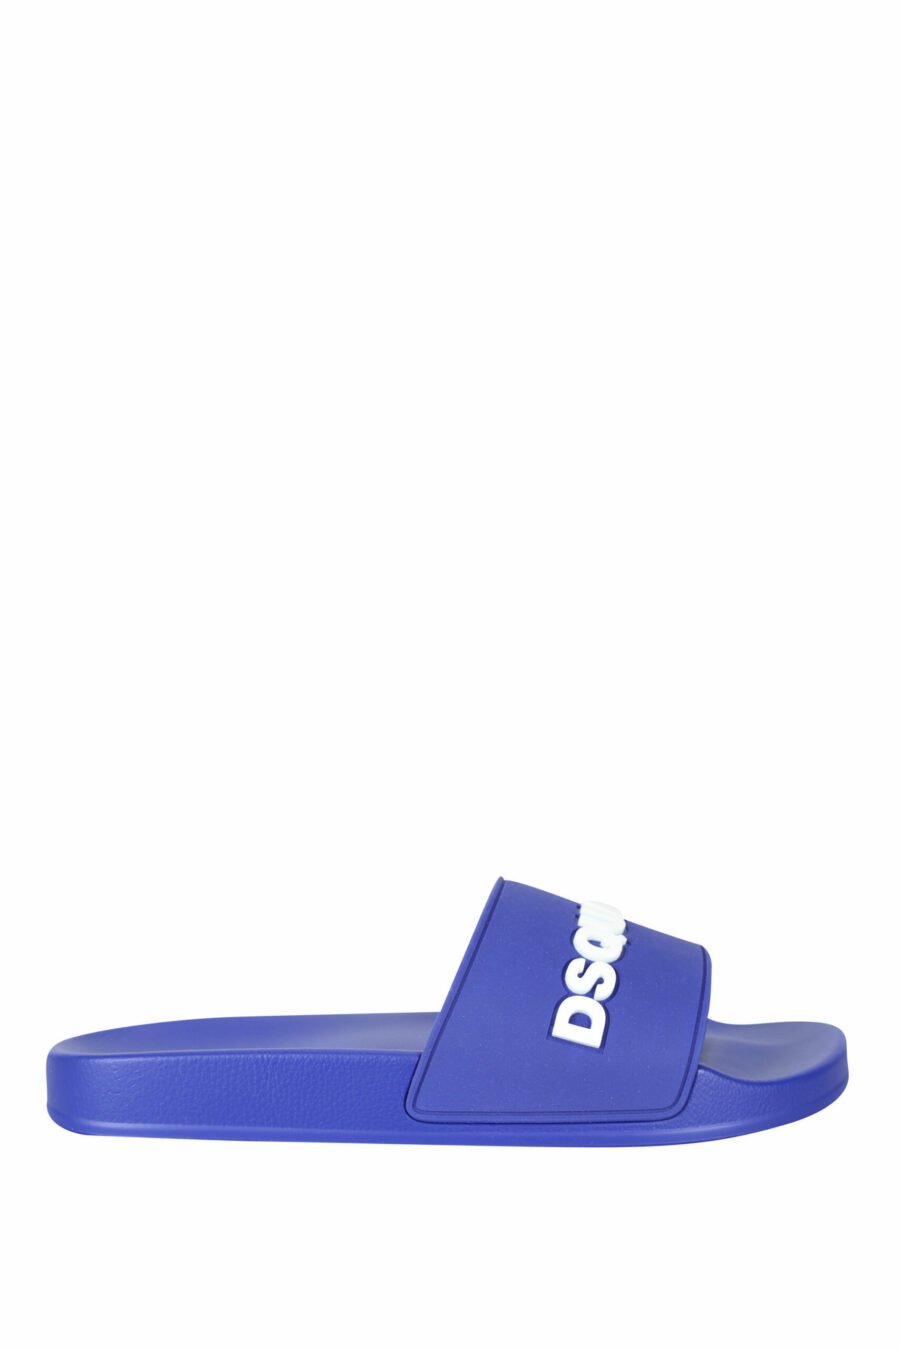 Blaue Flip Flops mit weißem Maxilogo - 8055777073780 skaliert